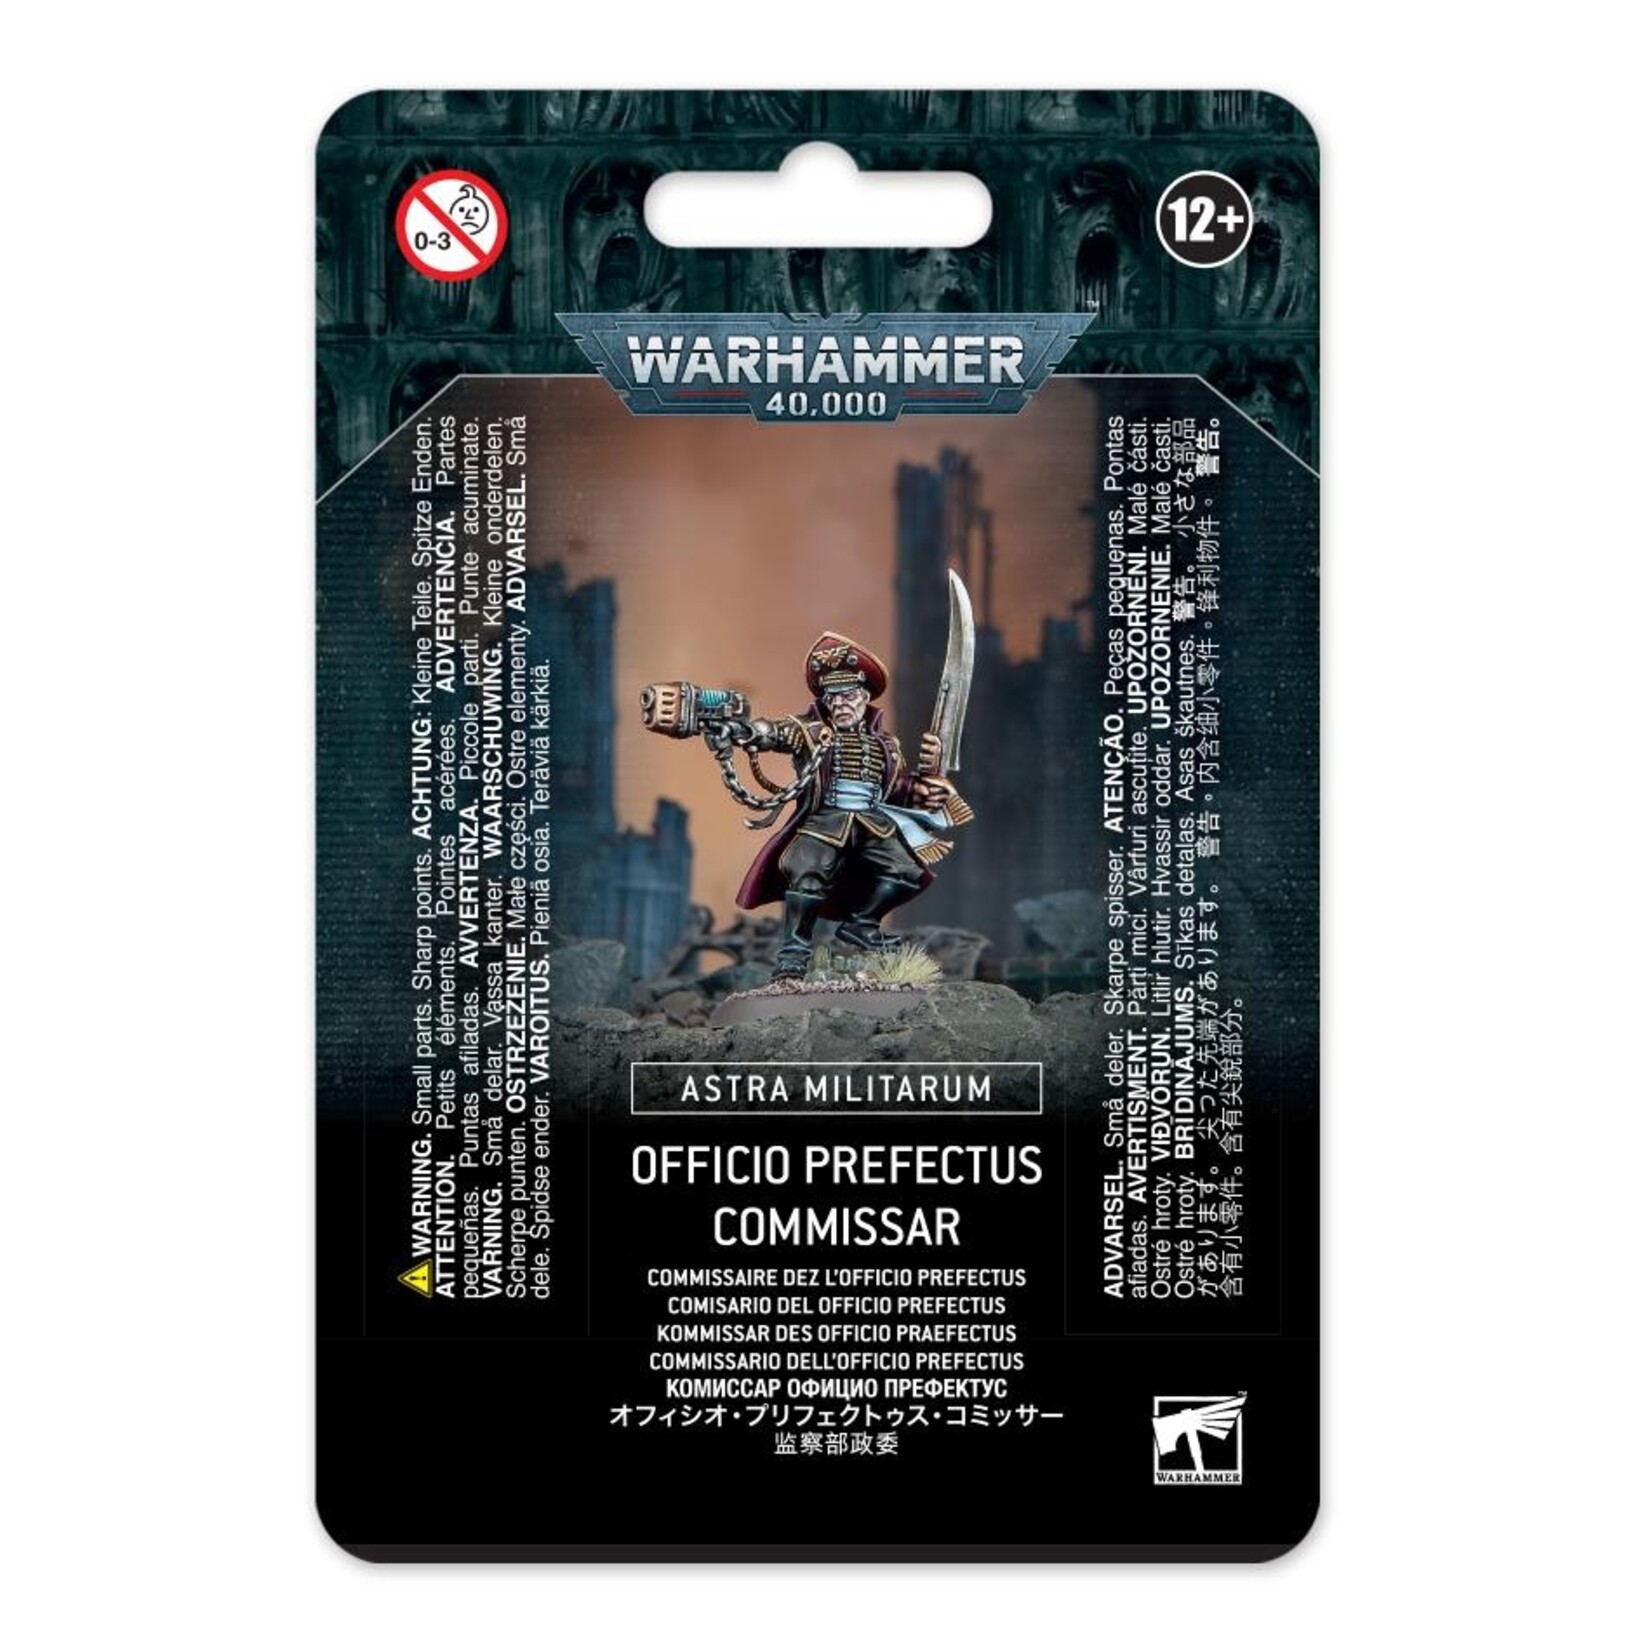 Warhammer Astra Militarul: Officio Perfectus Commisar